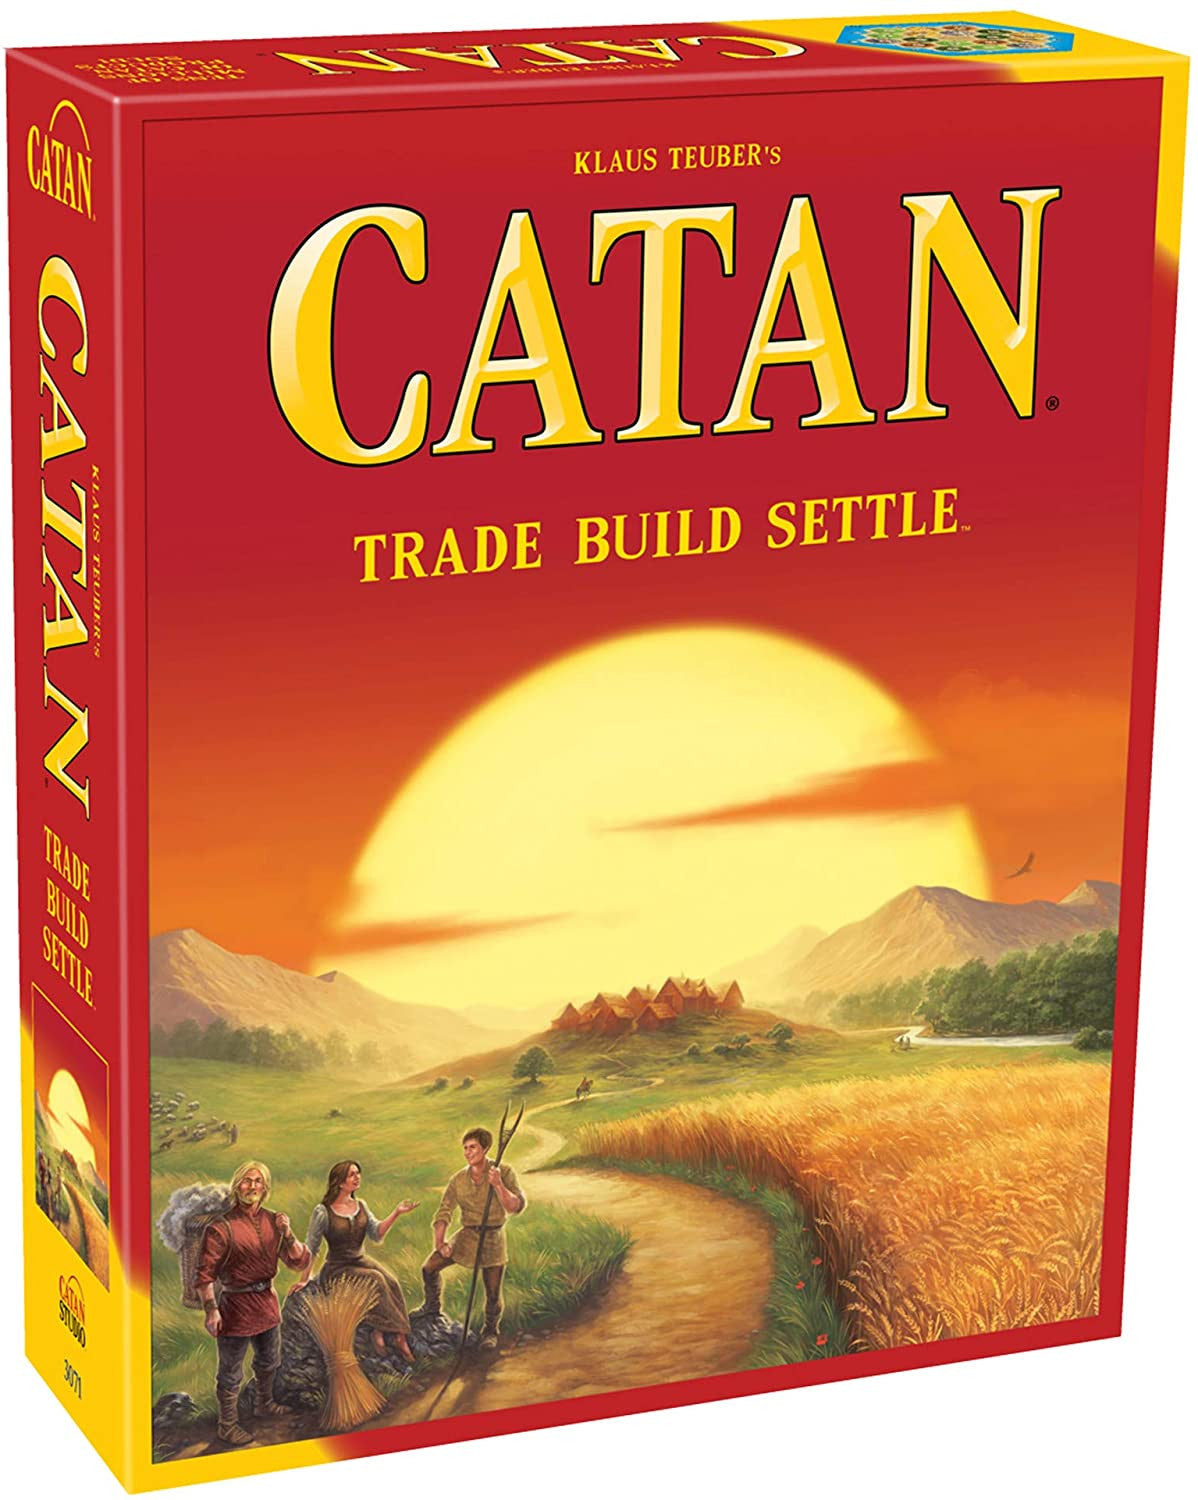 Catan Trade Build Settle